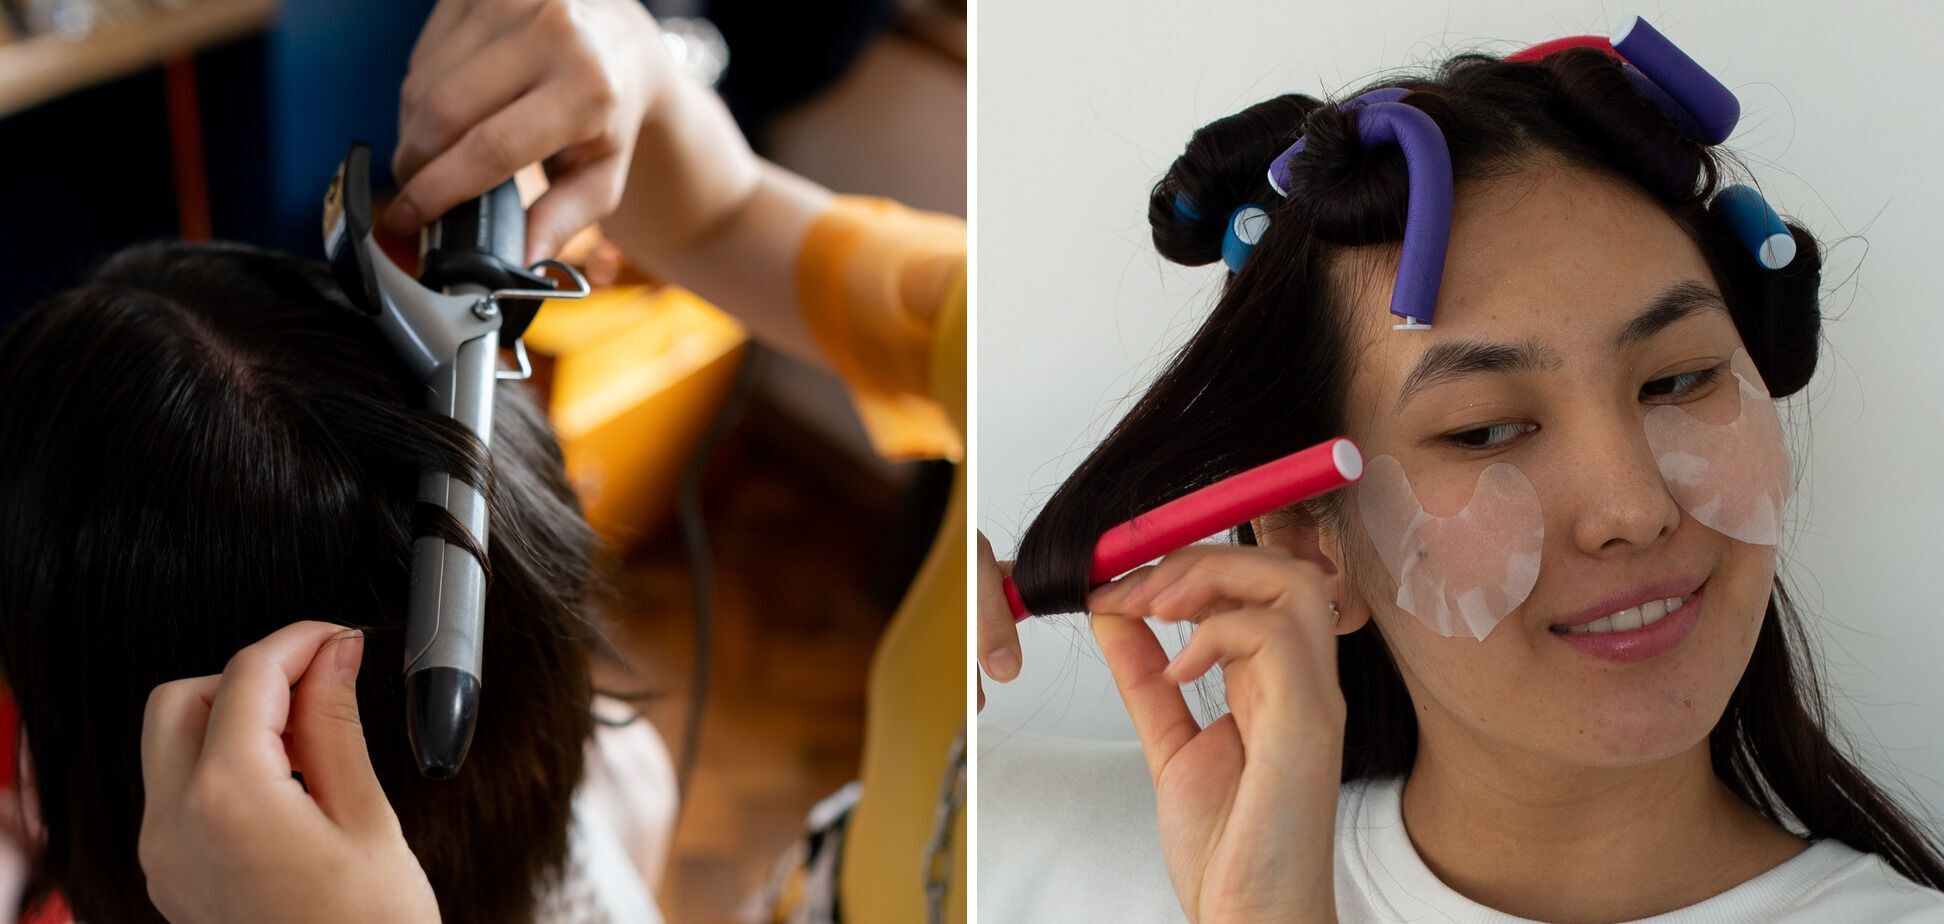 Як зробити зачіску, як у зірок Голлівуду: поради, які не важко повторити. Фото